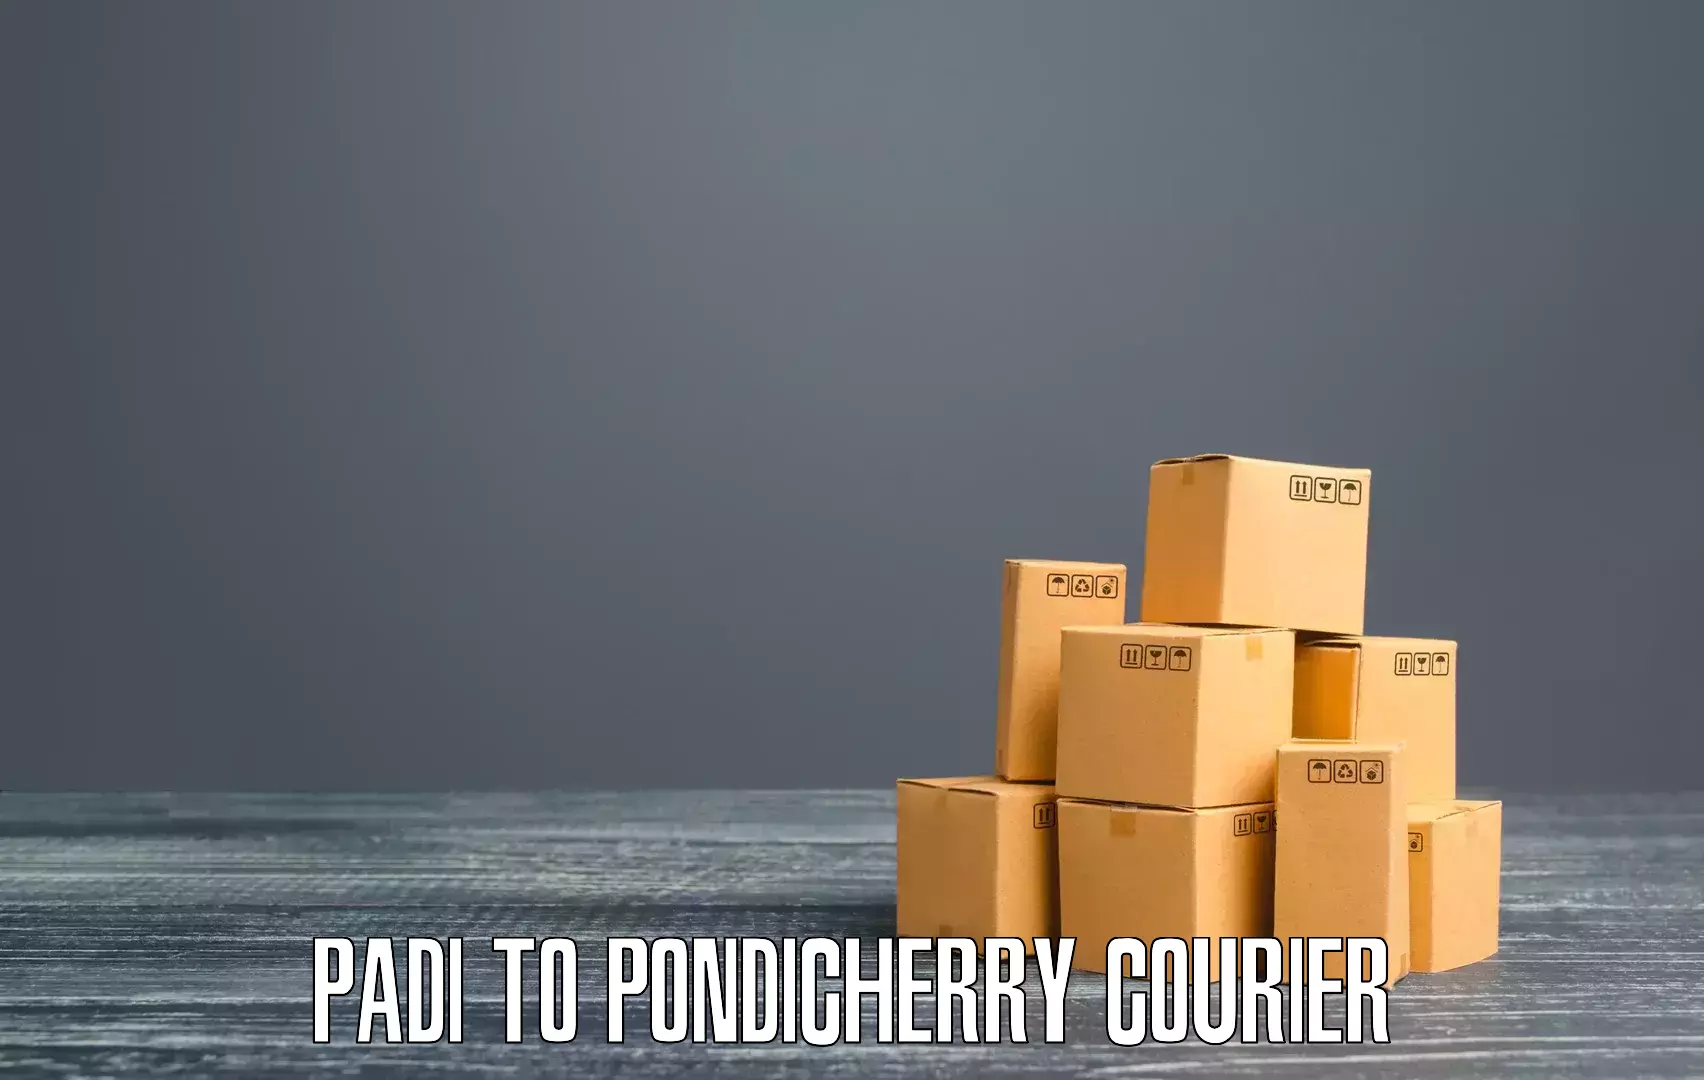 Pharmaceutical courier Padi to Pondicherry